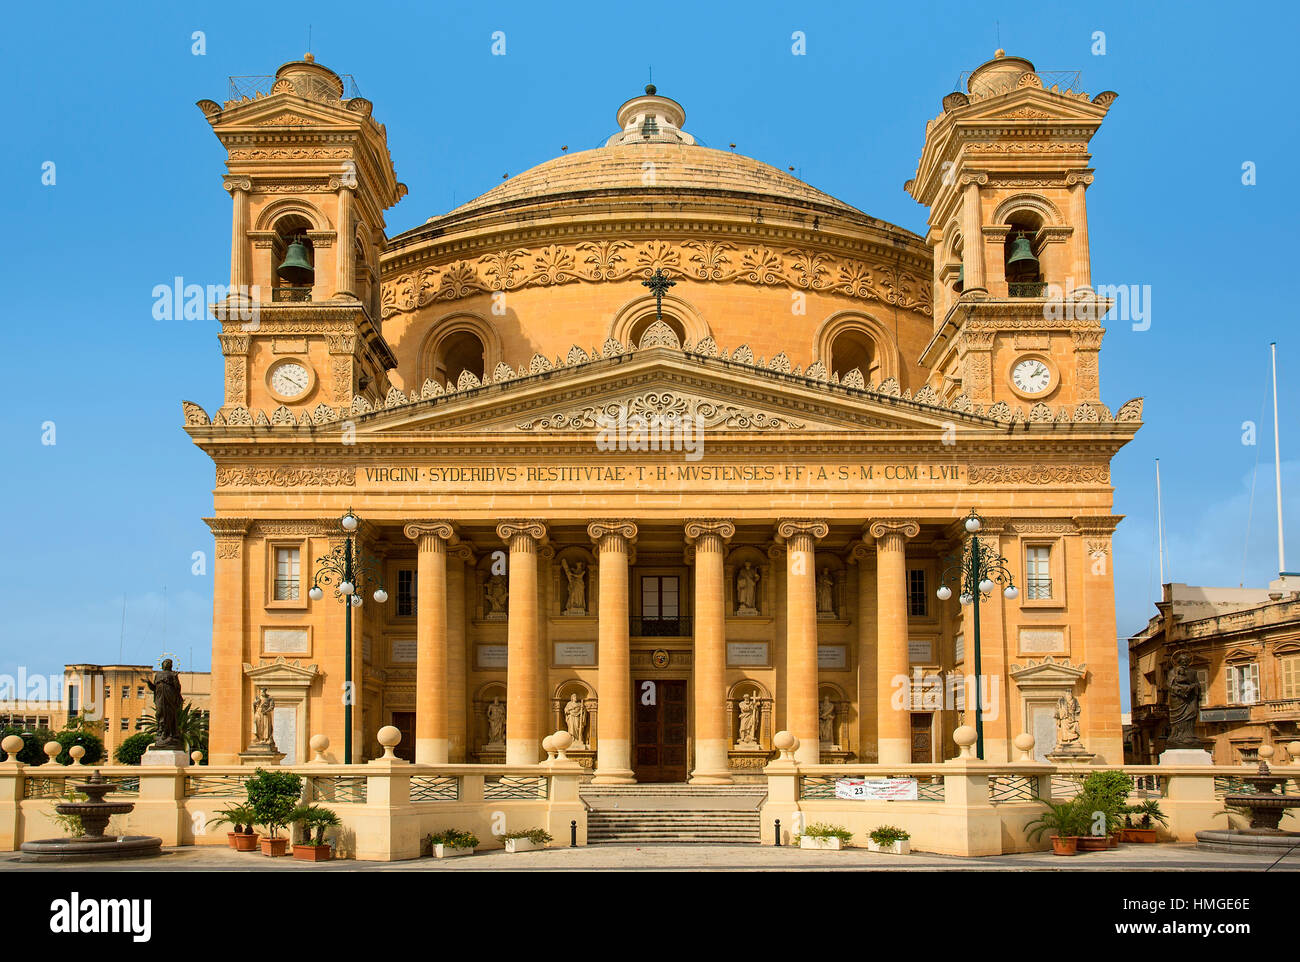 Chiesa di Santa Maria Assunta duomo di Mosta Piazza Rotunda Mosta Malta EU Europe Foto Stock